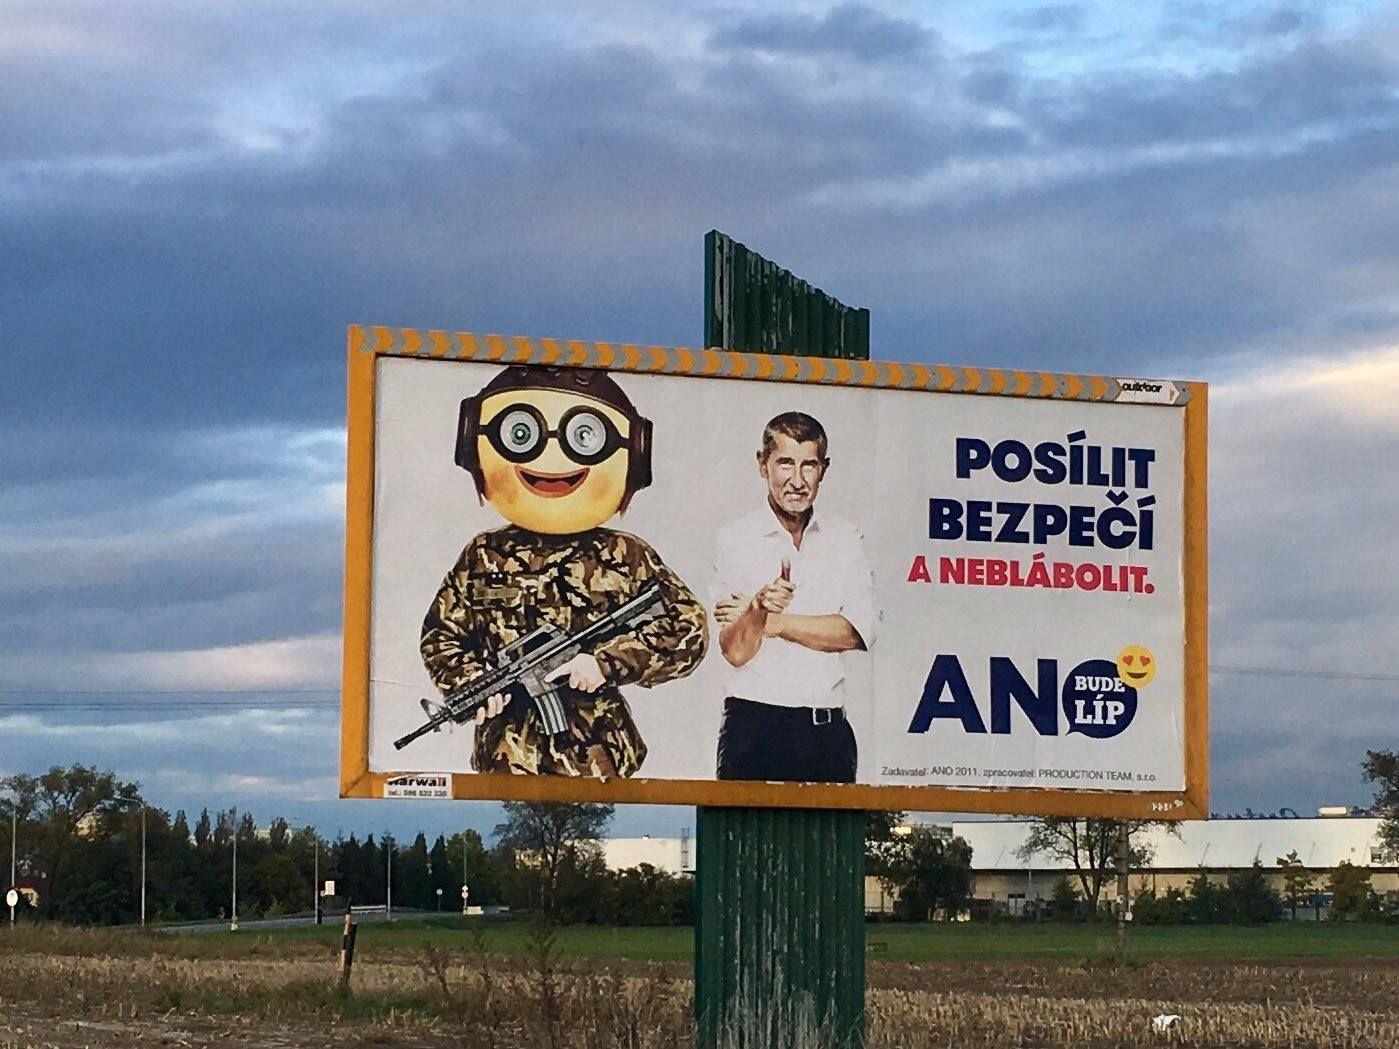 Babiš billboard